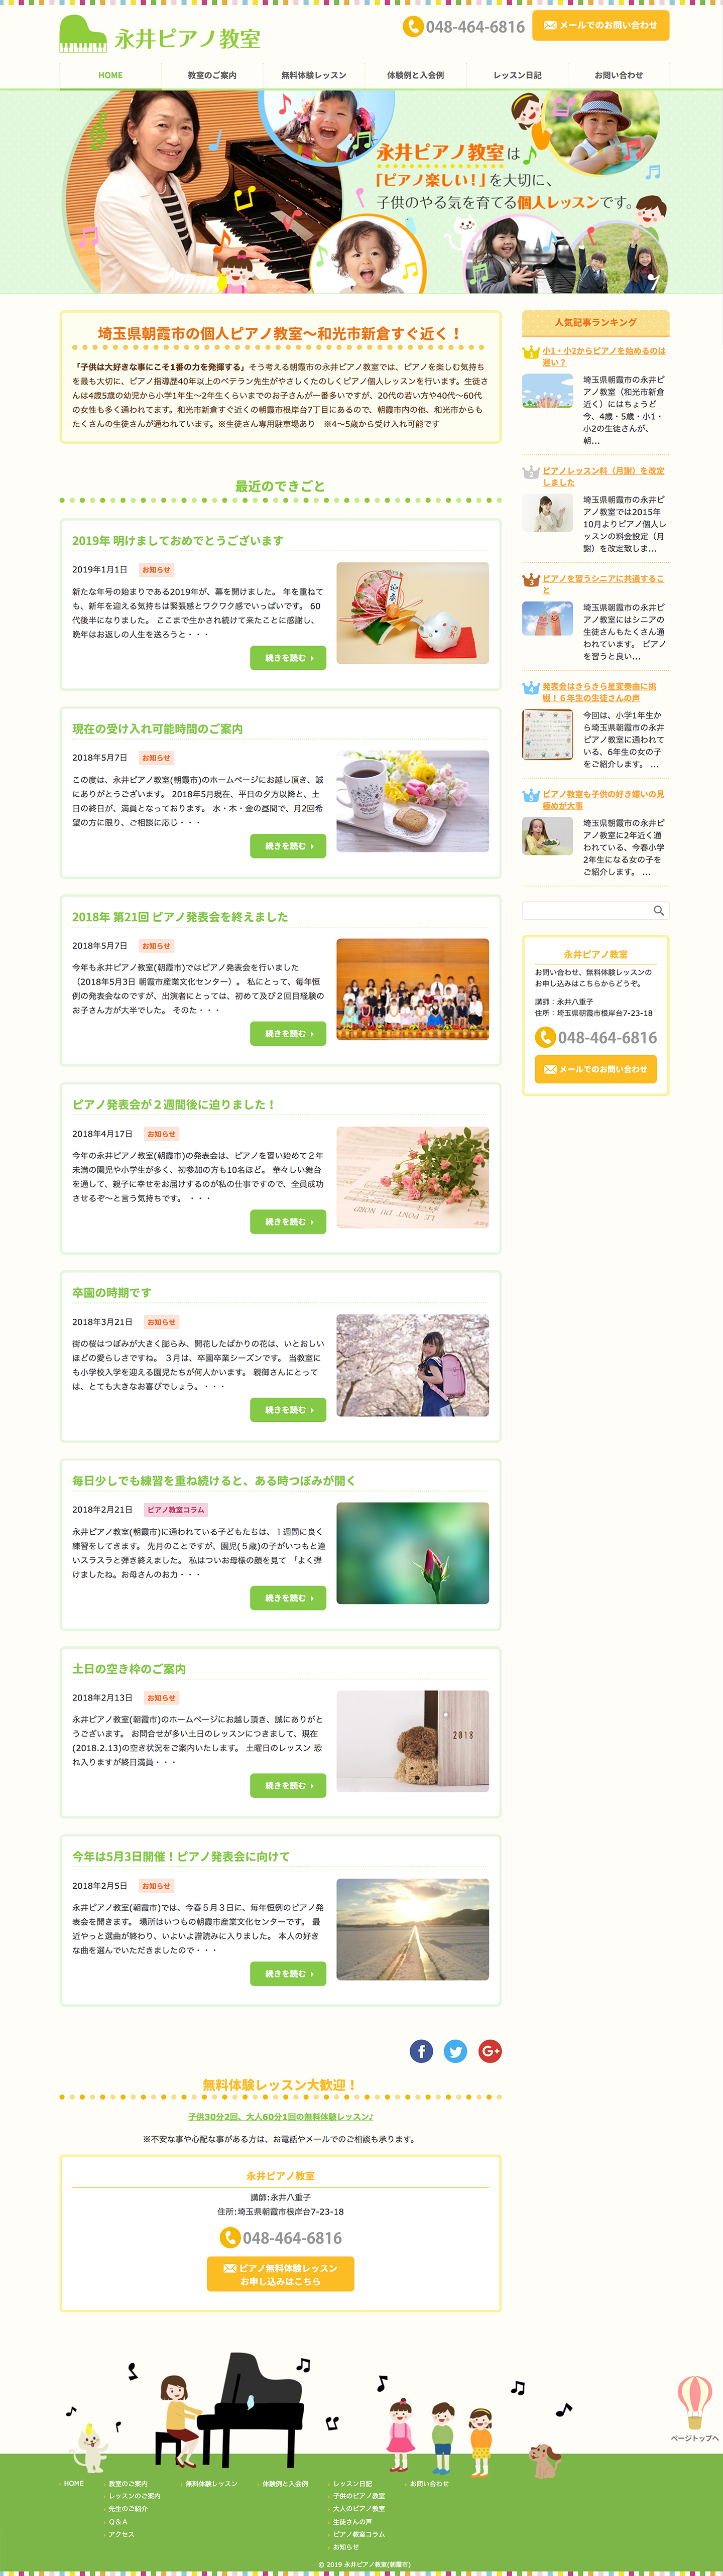 永井ピアノ教室さまのWebサイト